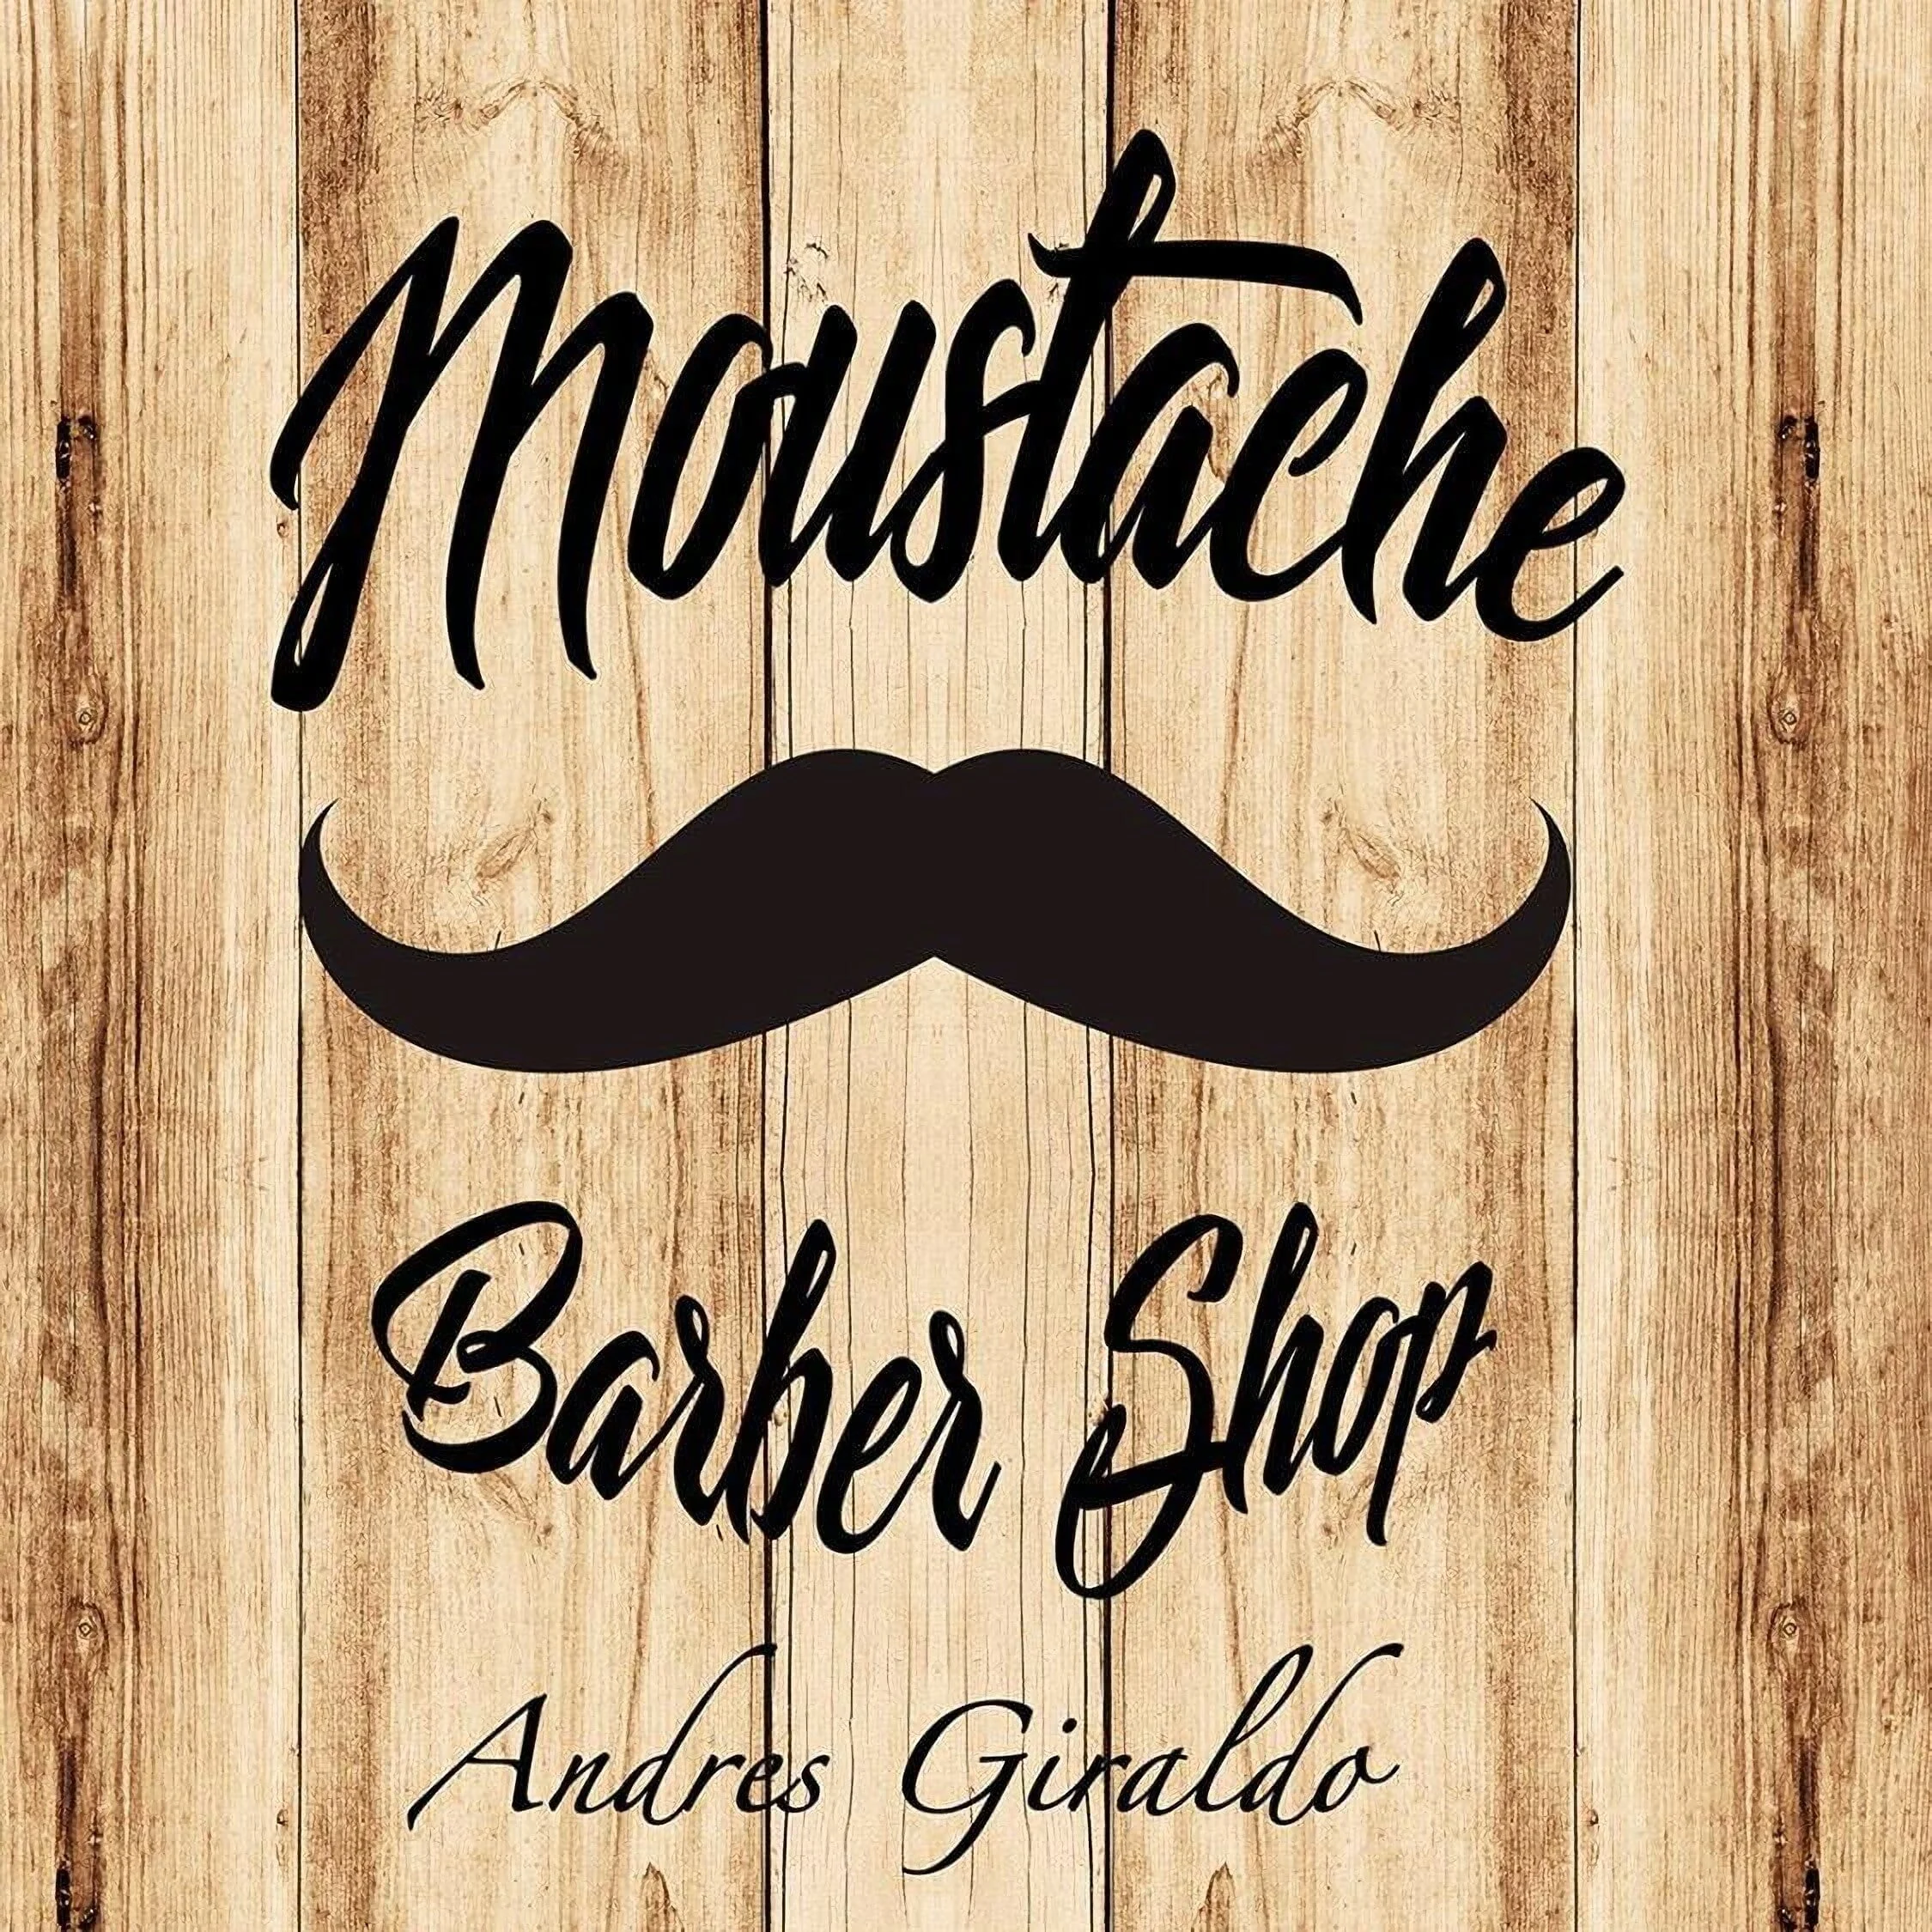 Barbería-moustache-barber-shop-ecuador-8989